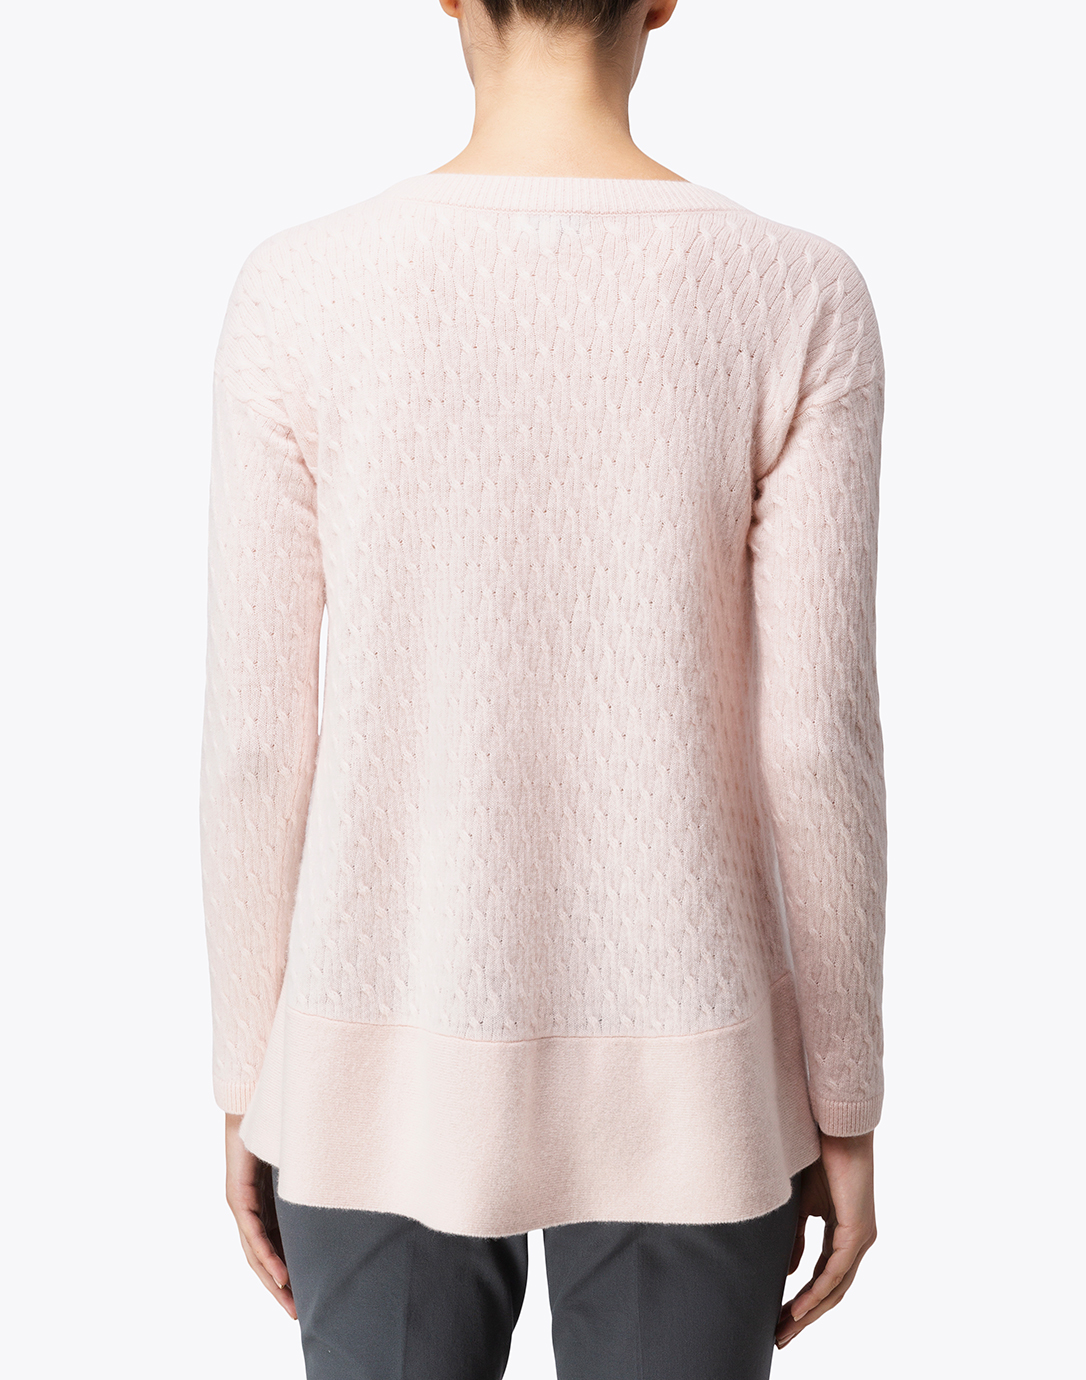 St. Tropez Pale Pink Cable Knit Cashmere Sweater | Cortland Park ...